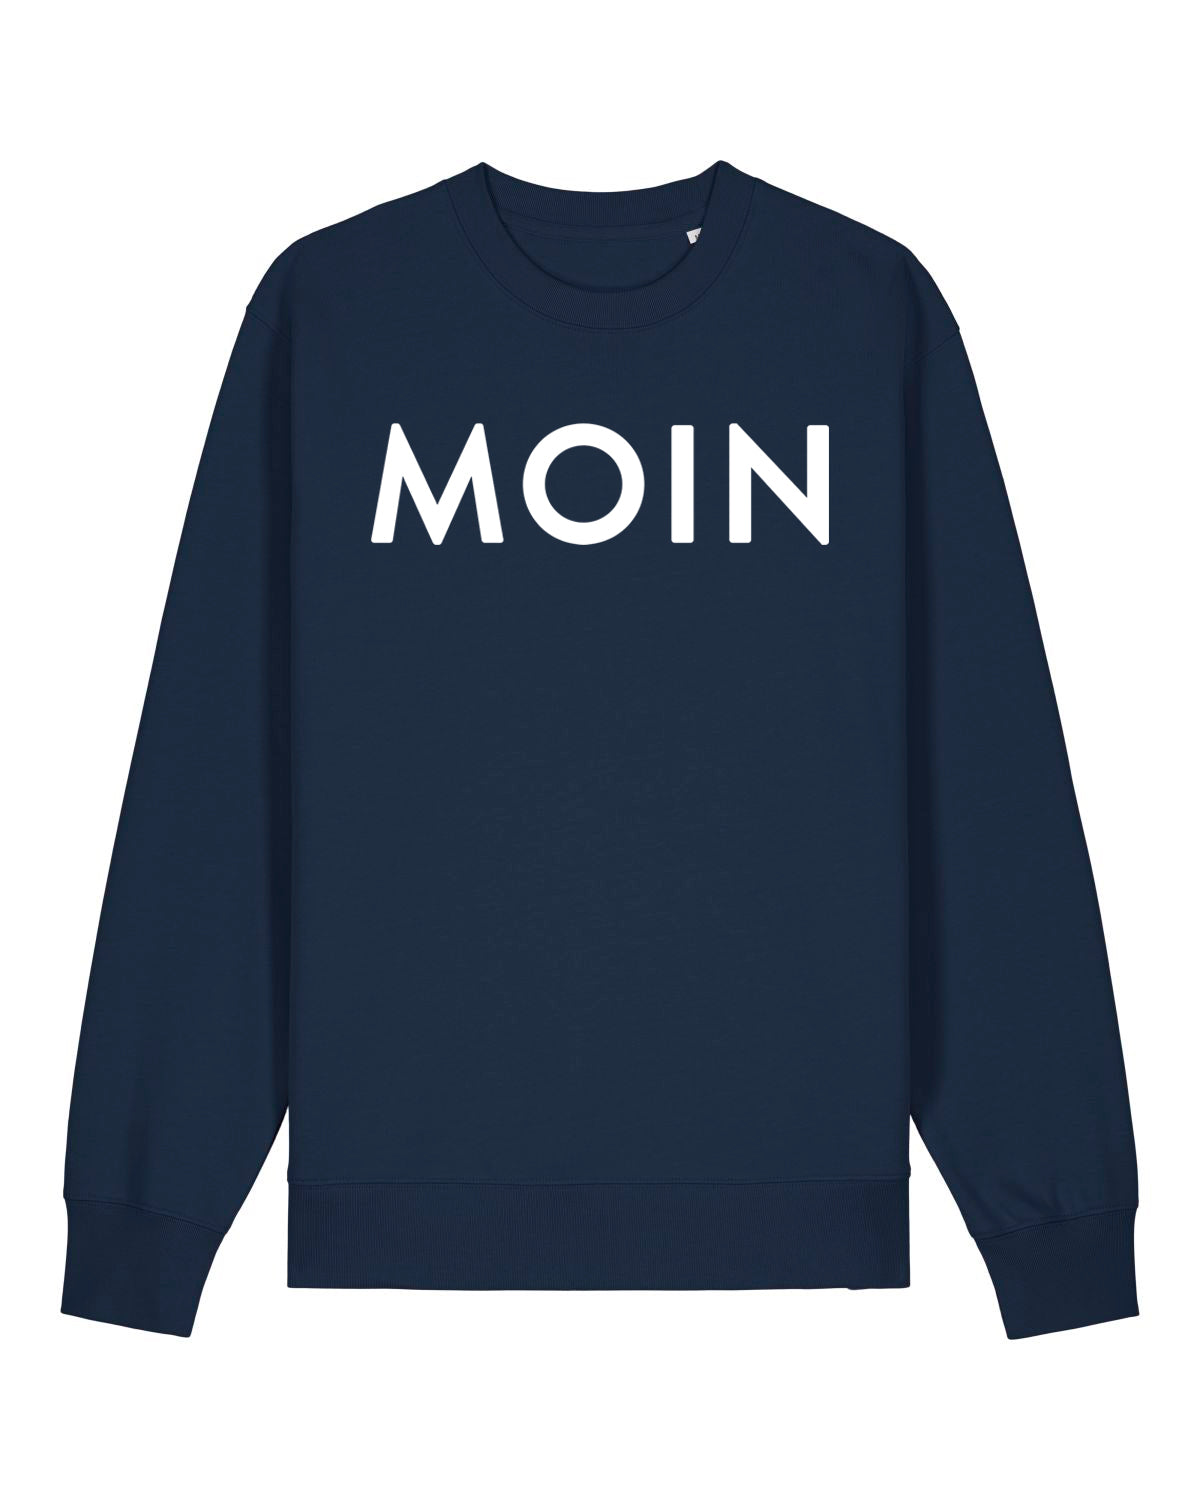 Sweatshirt "Moin" Blau/Weiss